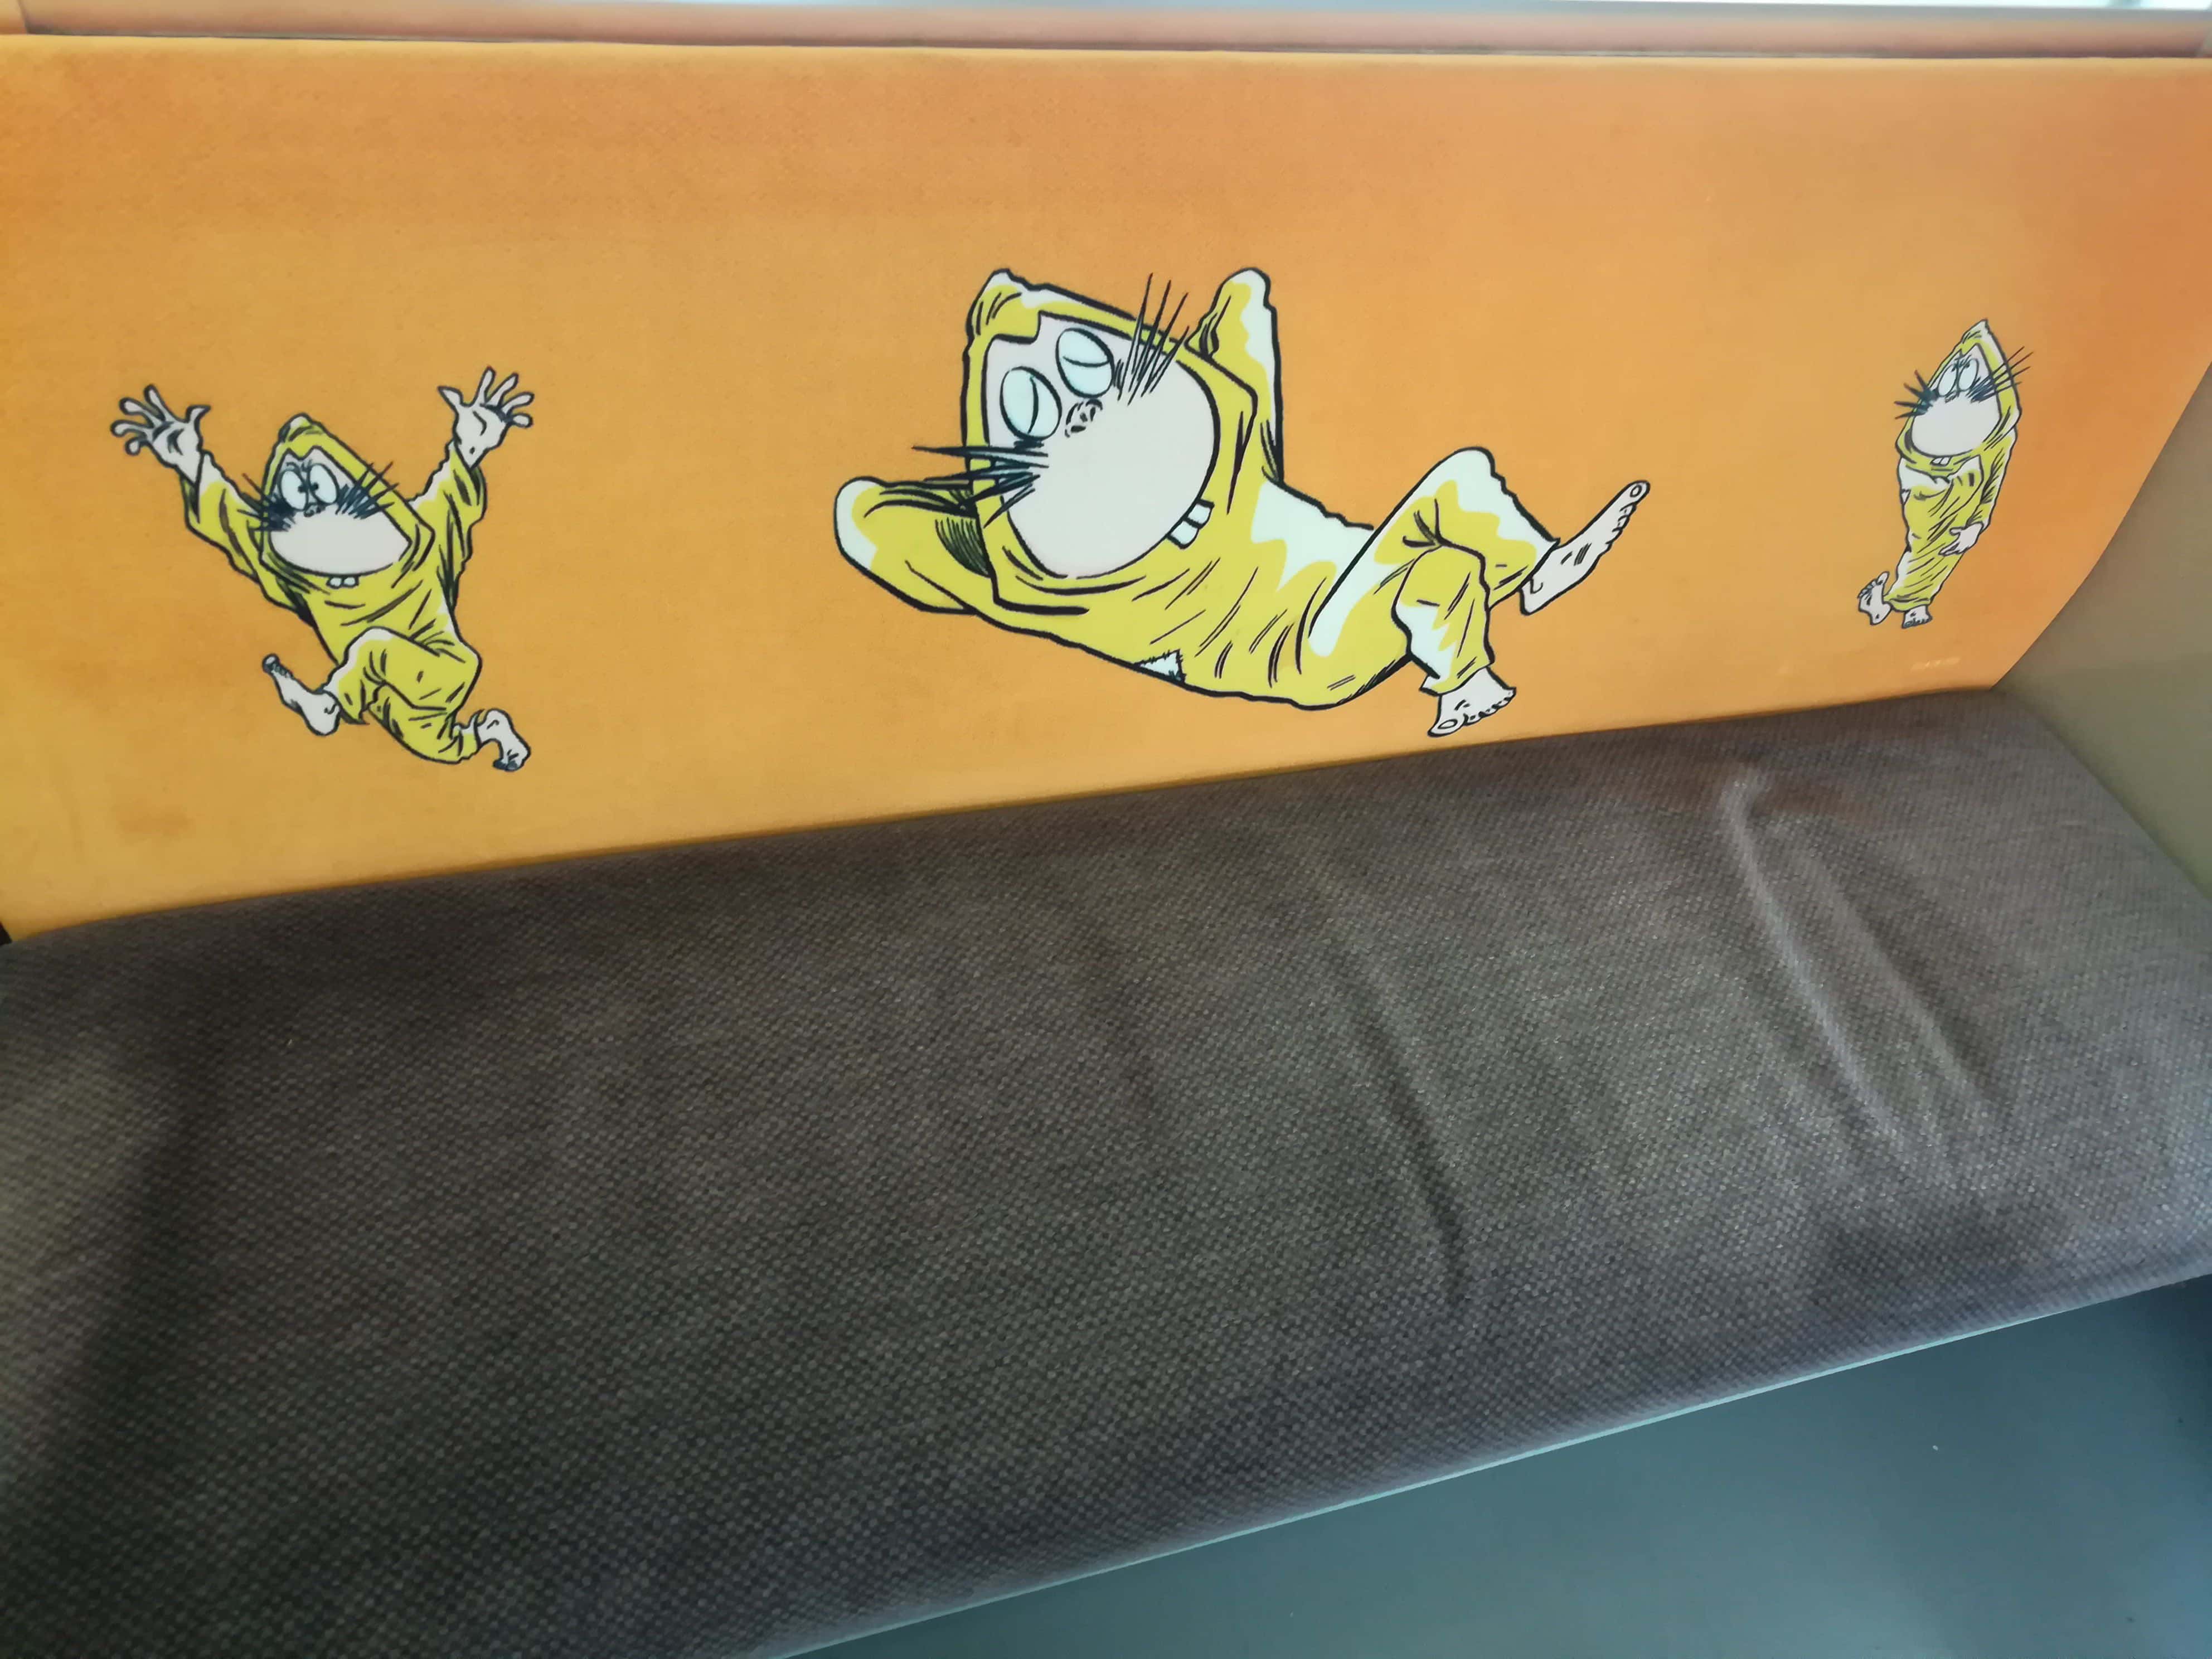 รถไฟตกแต่งด้วยการ์ตูนผีน้อยคิทาโร่